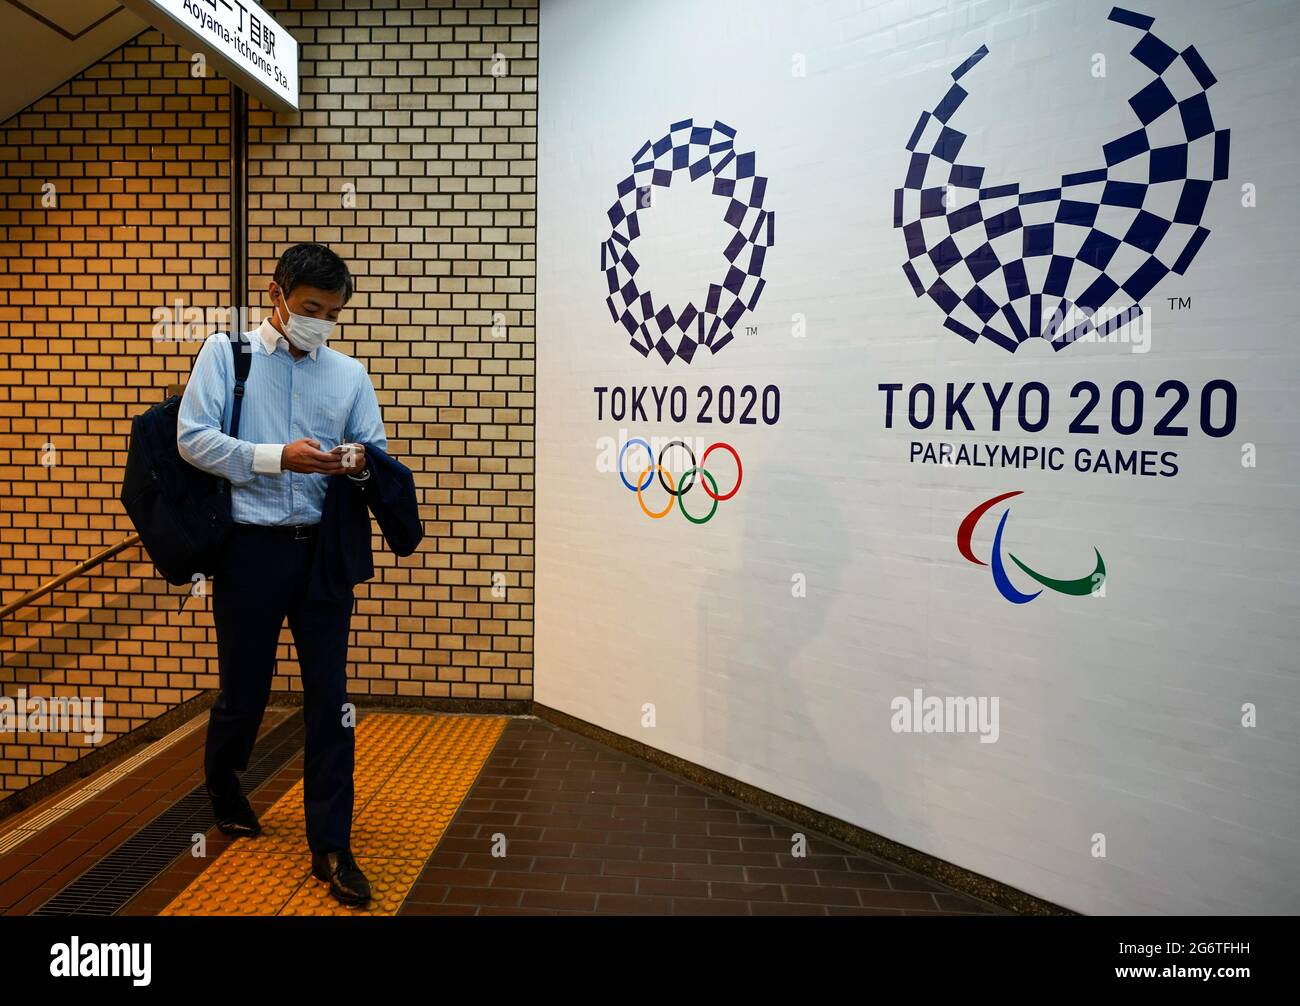 (210708) -- TOKYO, le 8 juillet 2021 (Xinhua) -- UN homme sort d'une gare et affiche les logos des Jeux paralympiques de Tokyo 2020 et de Tokyo 2020 à Tokyo, au Japon, le 8 juillet 2021. Le gouvernement japonais a décidé jeudi de placer la capitale Tokyo sous le quatrième état d'urgence sur la COVID-19, couvrant la durée des Jeux Olympiques, dans un effort pour enrayer une récente vague d'infections. (Photo de Christopher Jue/Xinhua) Banque D'Images